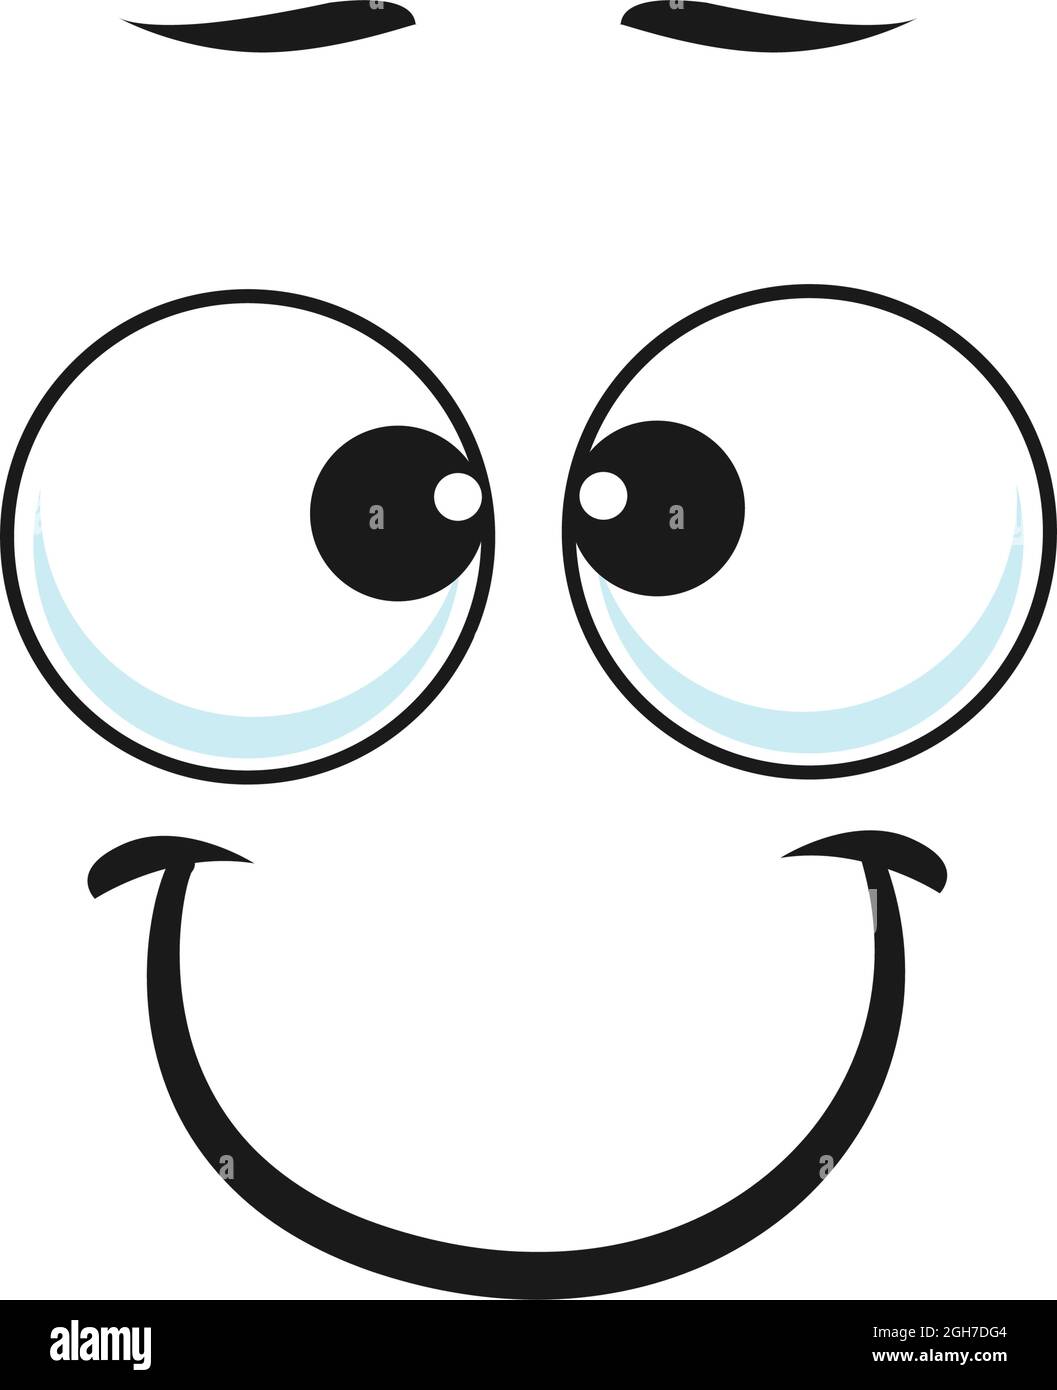 Fumetto sorridente faccia vettore divertente emoji con amichevole paesaggio sorriso e occhi rotondi. Espressione facciale felice, sentimenti positivi isolati sul dorso bianco Illustrazione Vettoriale